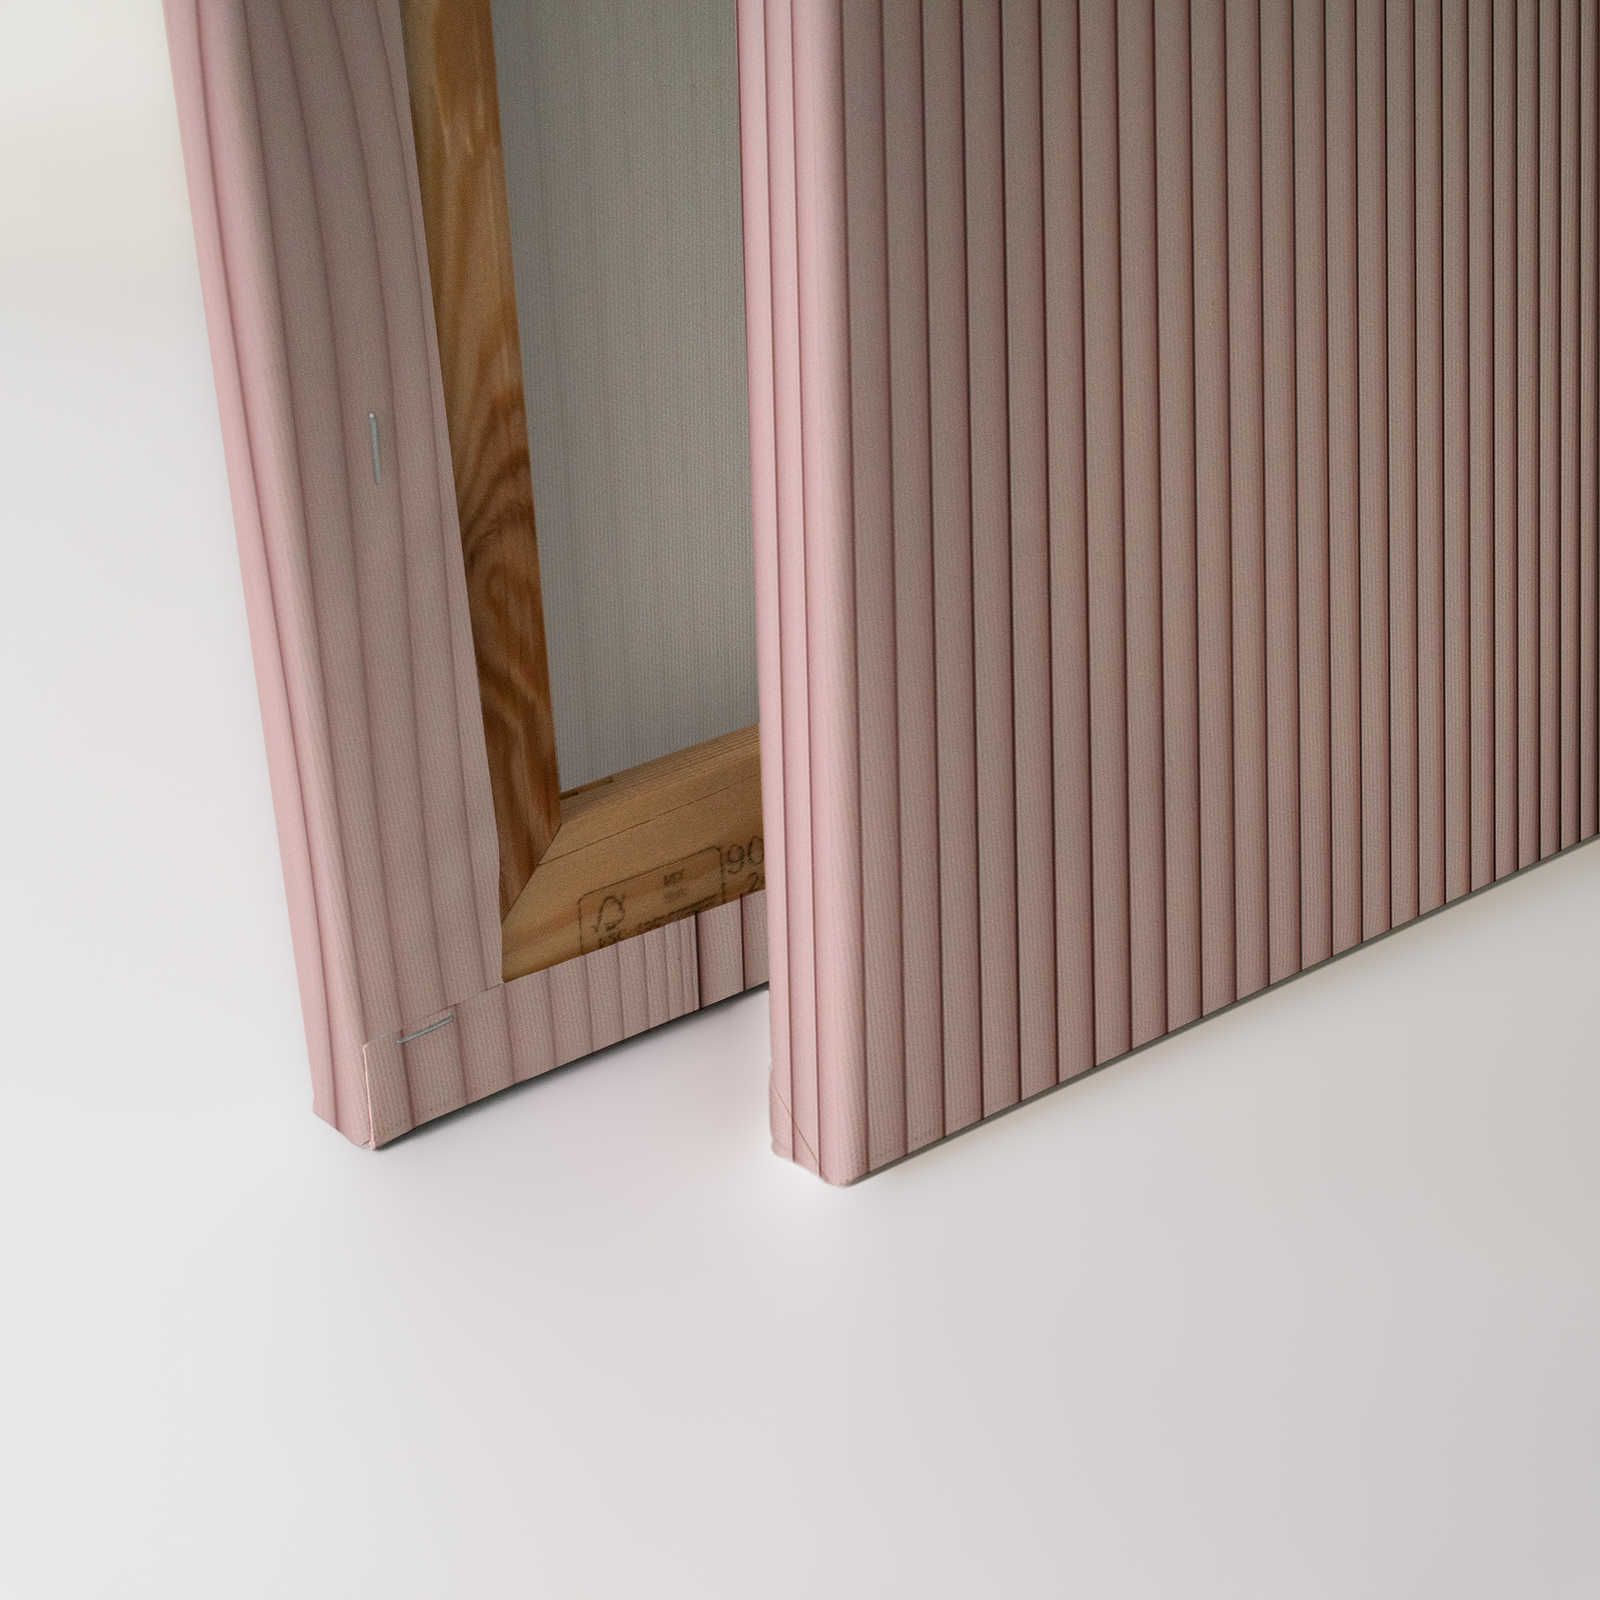             Magic Wall 4 - Lienzo a rayas con efecto ilusión 3D, rosa y blanco - 0,90 m x 0,60 m
        